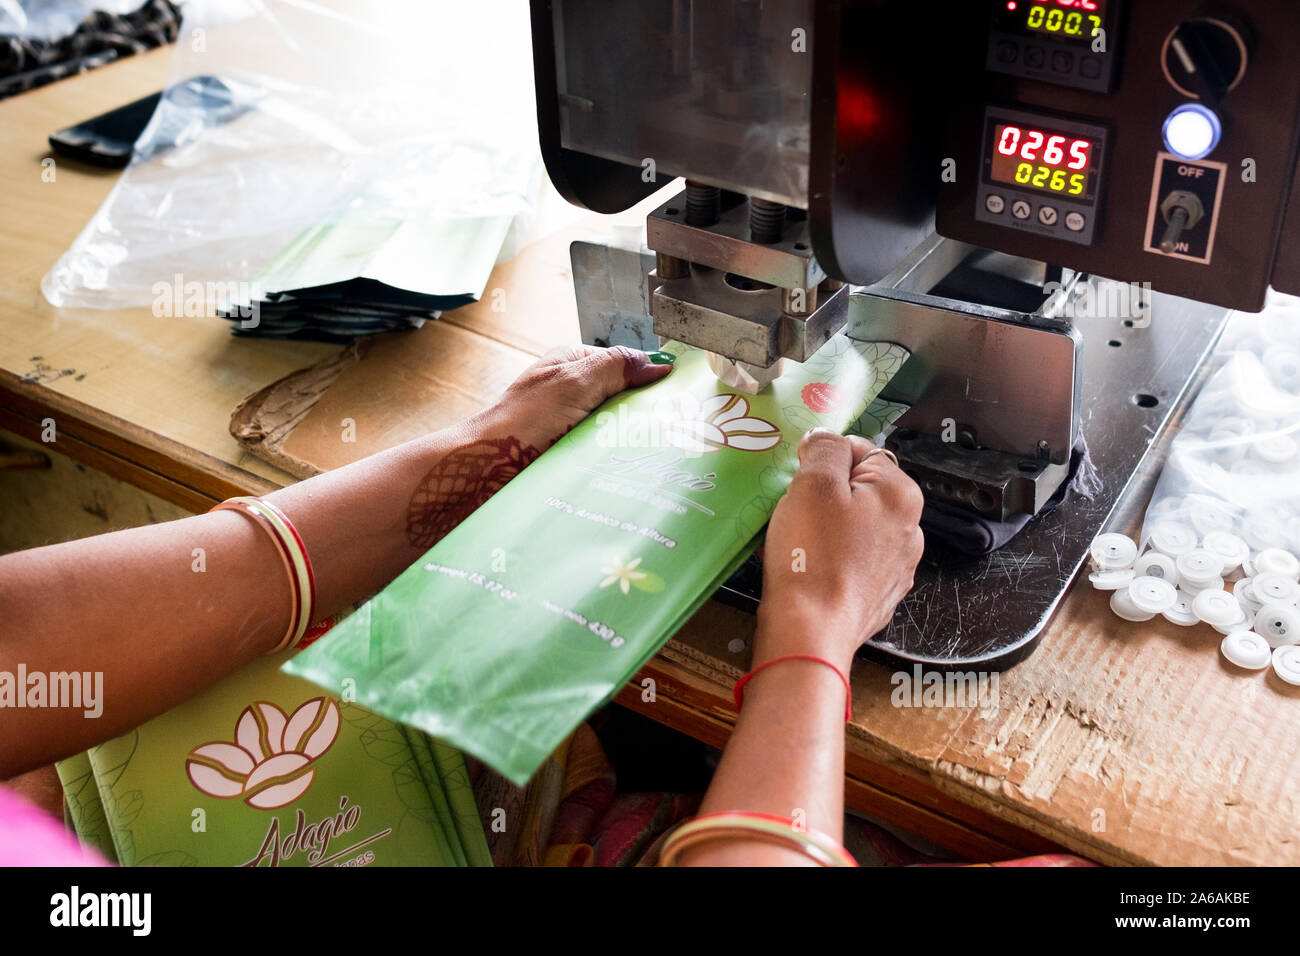 New Delhi, India - 10 settembre 2019: close up della donna indiana mani utilizzando apparecchiature industriali imballaggio interno impianto di fabbricazione Foto Stock